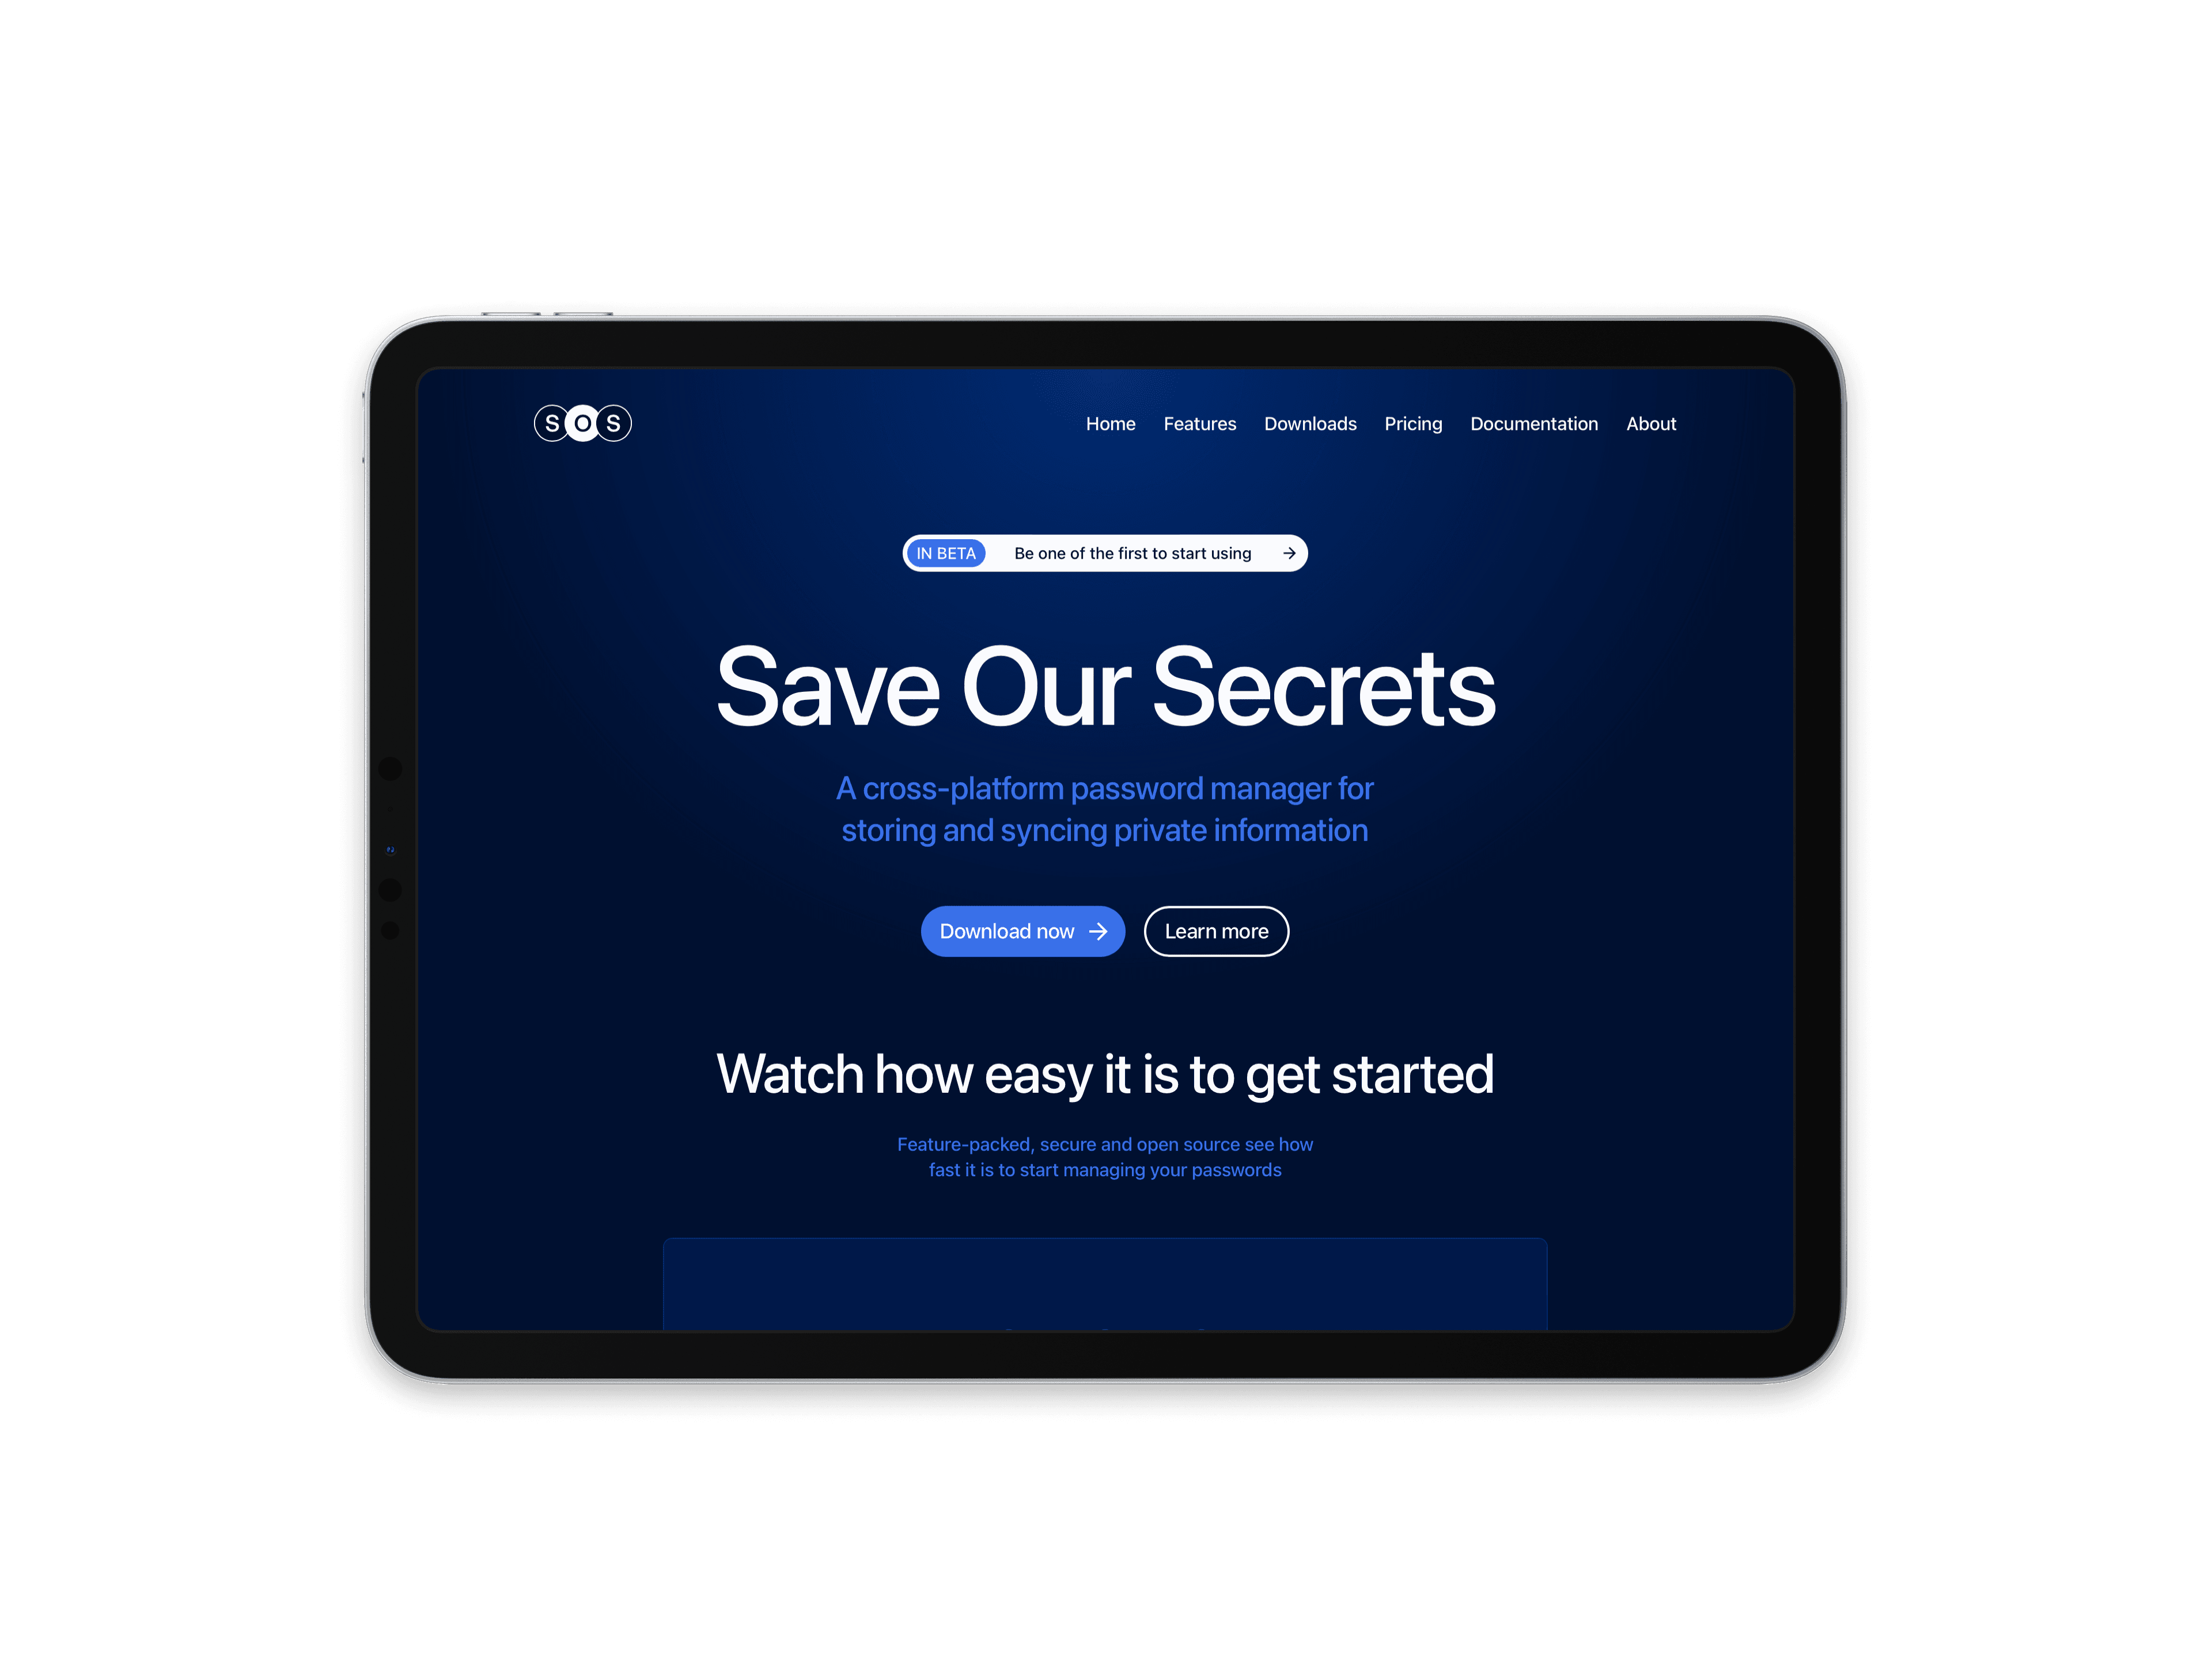 Save Our Secrets